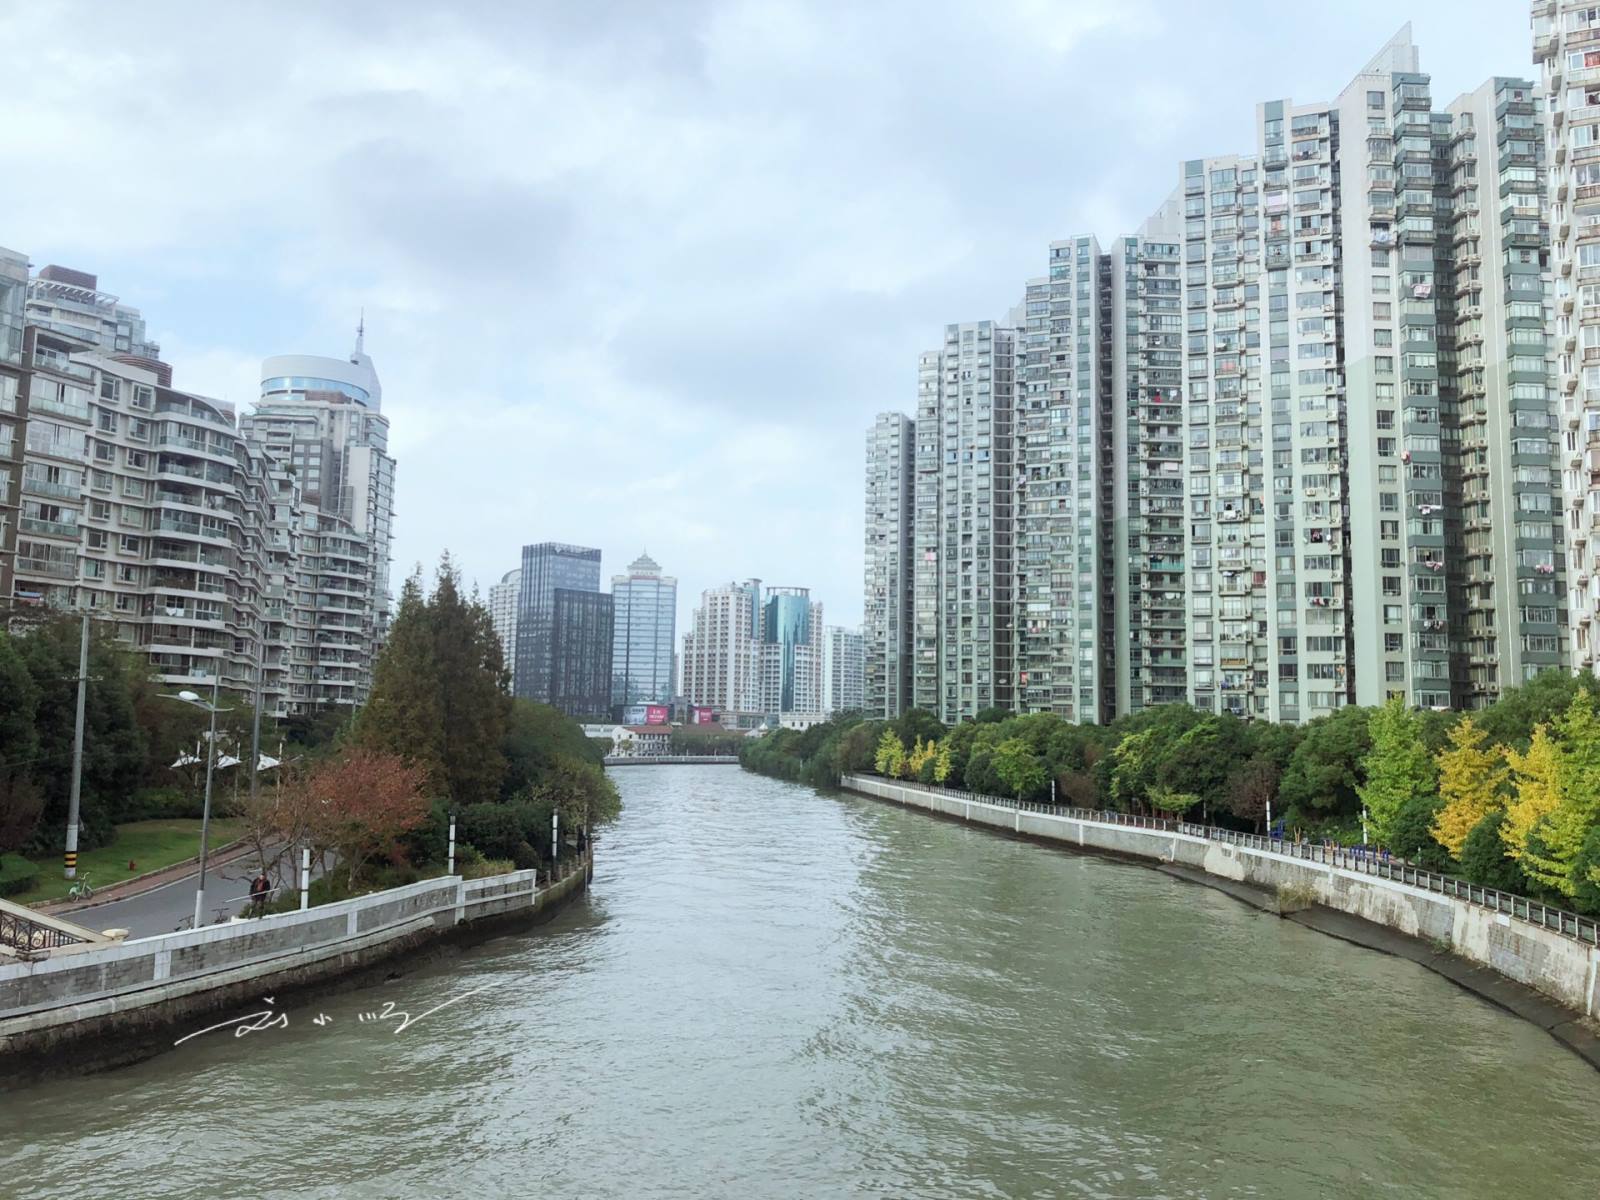 上海的另一条母亲河,不是黄浦江,以前很臭,现在变成富人区